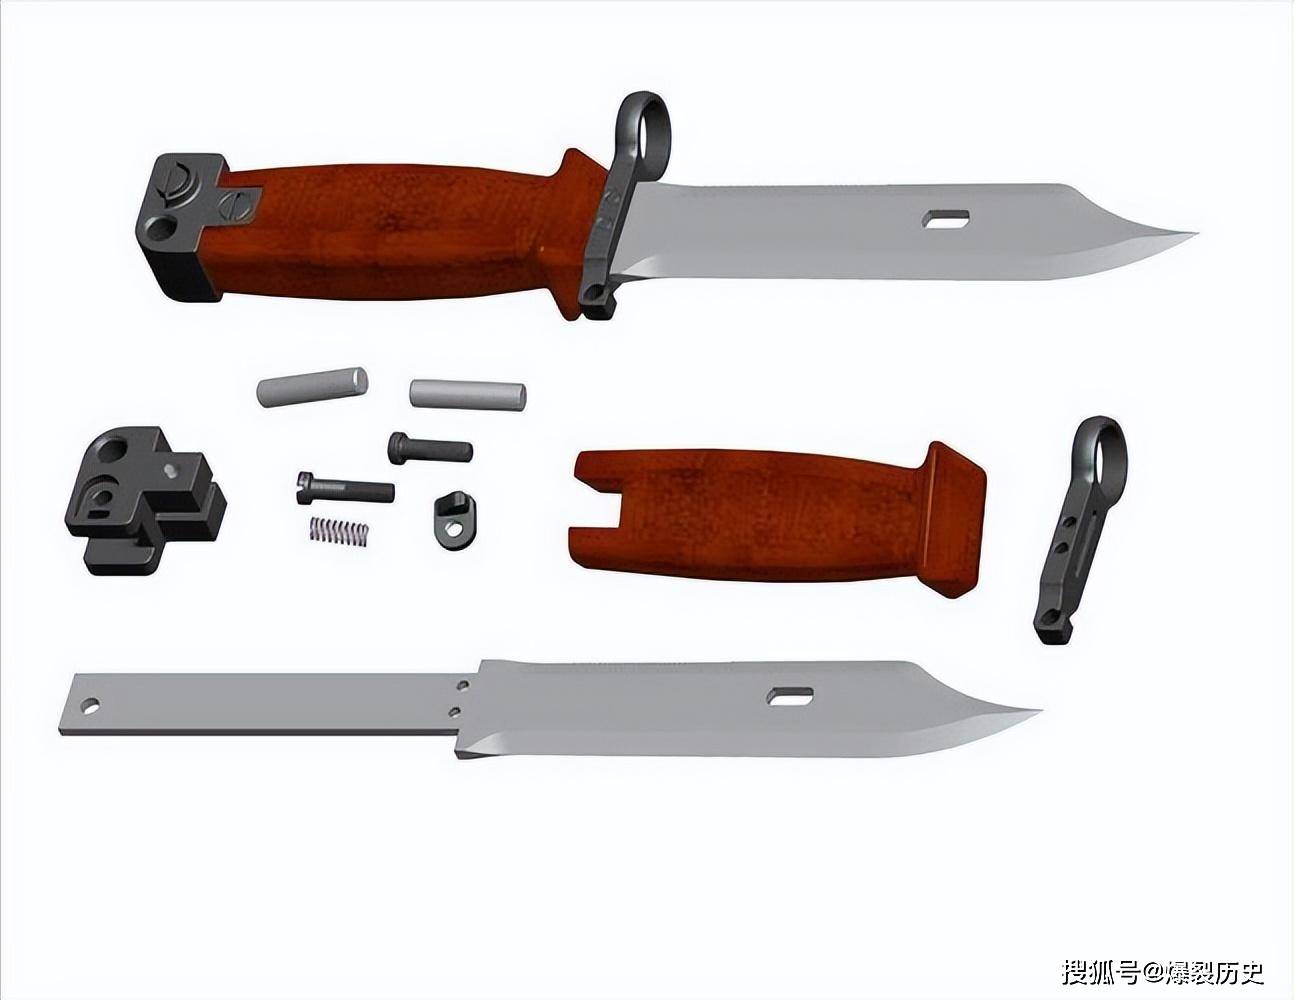 世界第一款多用途刺刀,苏联akm刺刀,美国m9,中国95共同的师傅